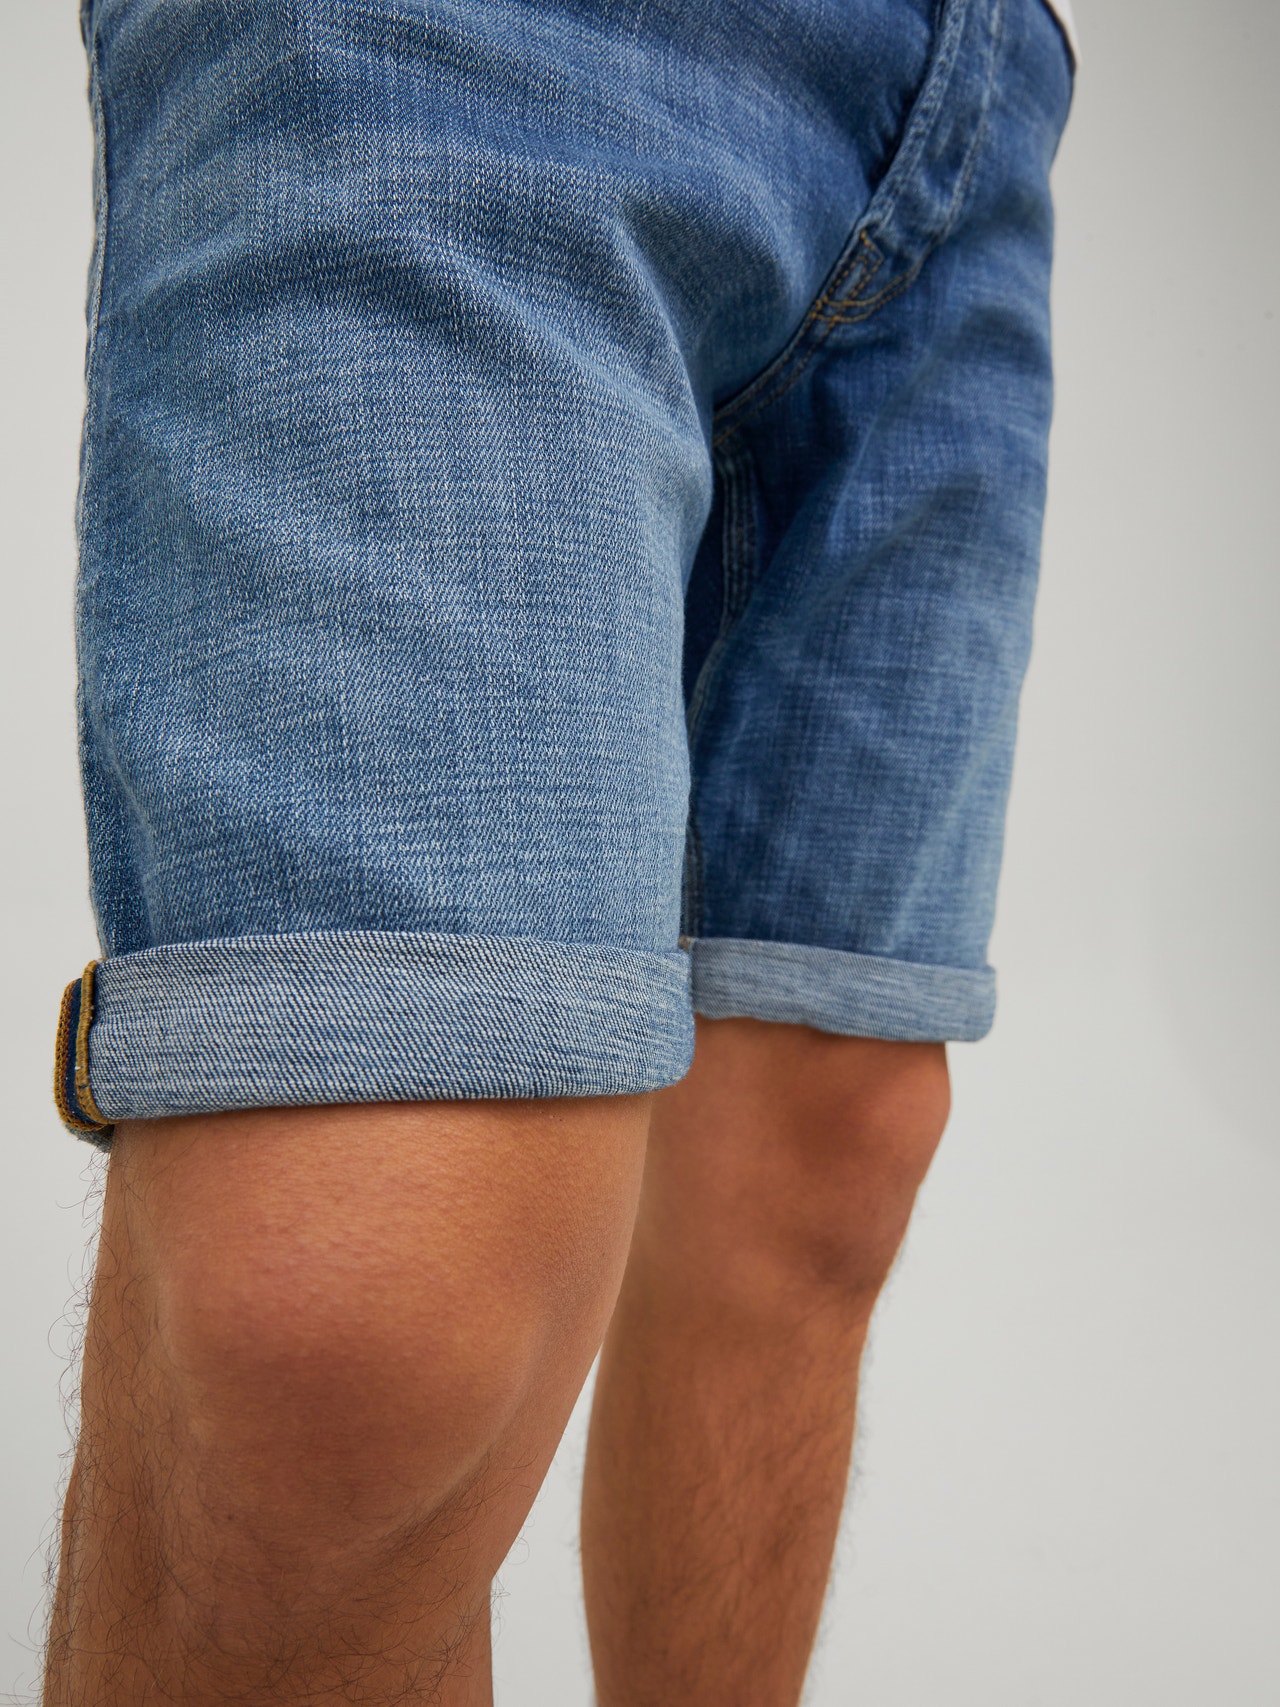 Short jeans Jordache Blue size 24 US in Cotton - 17421236